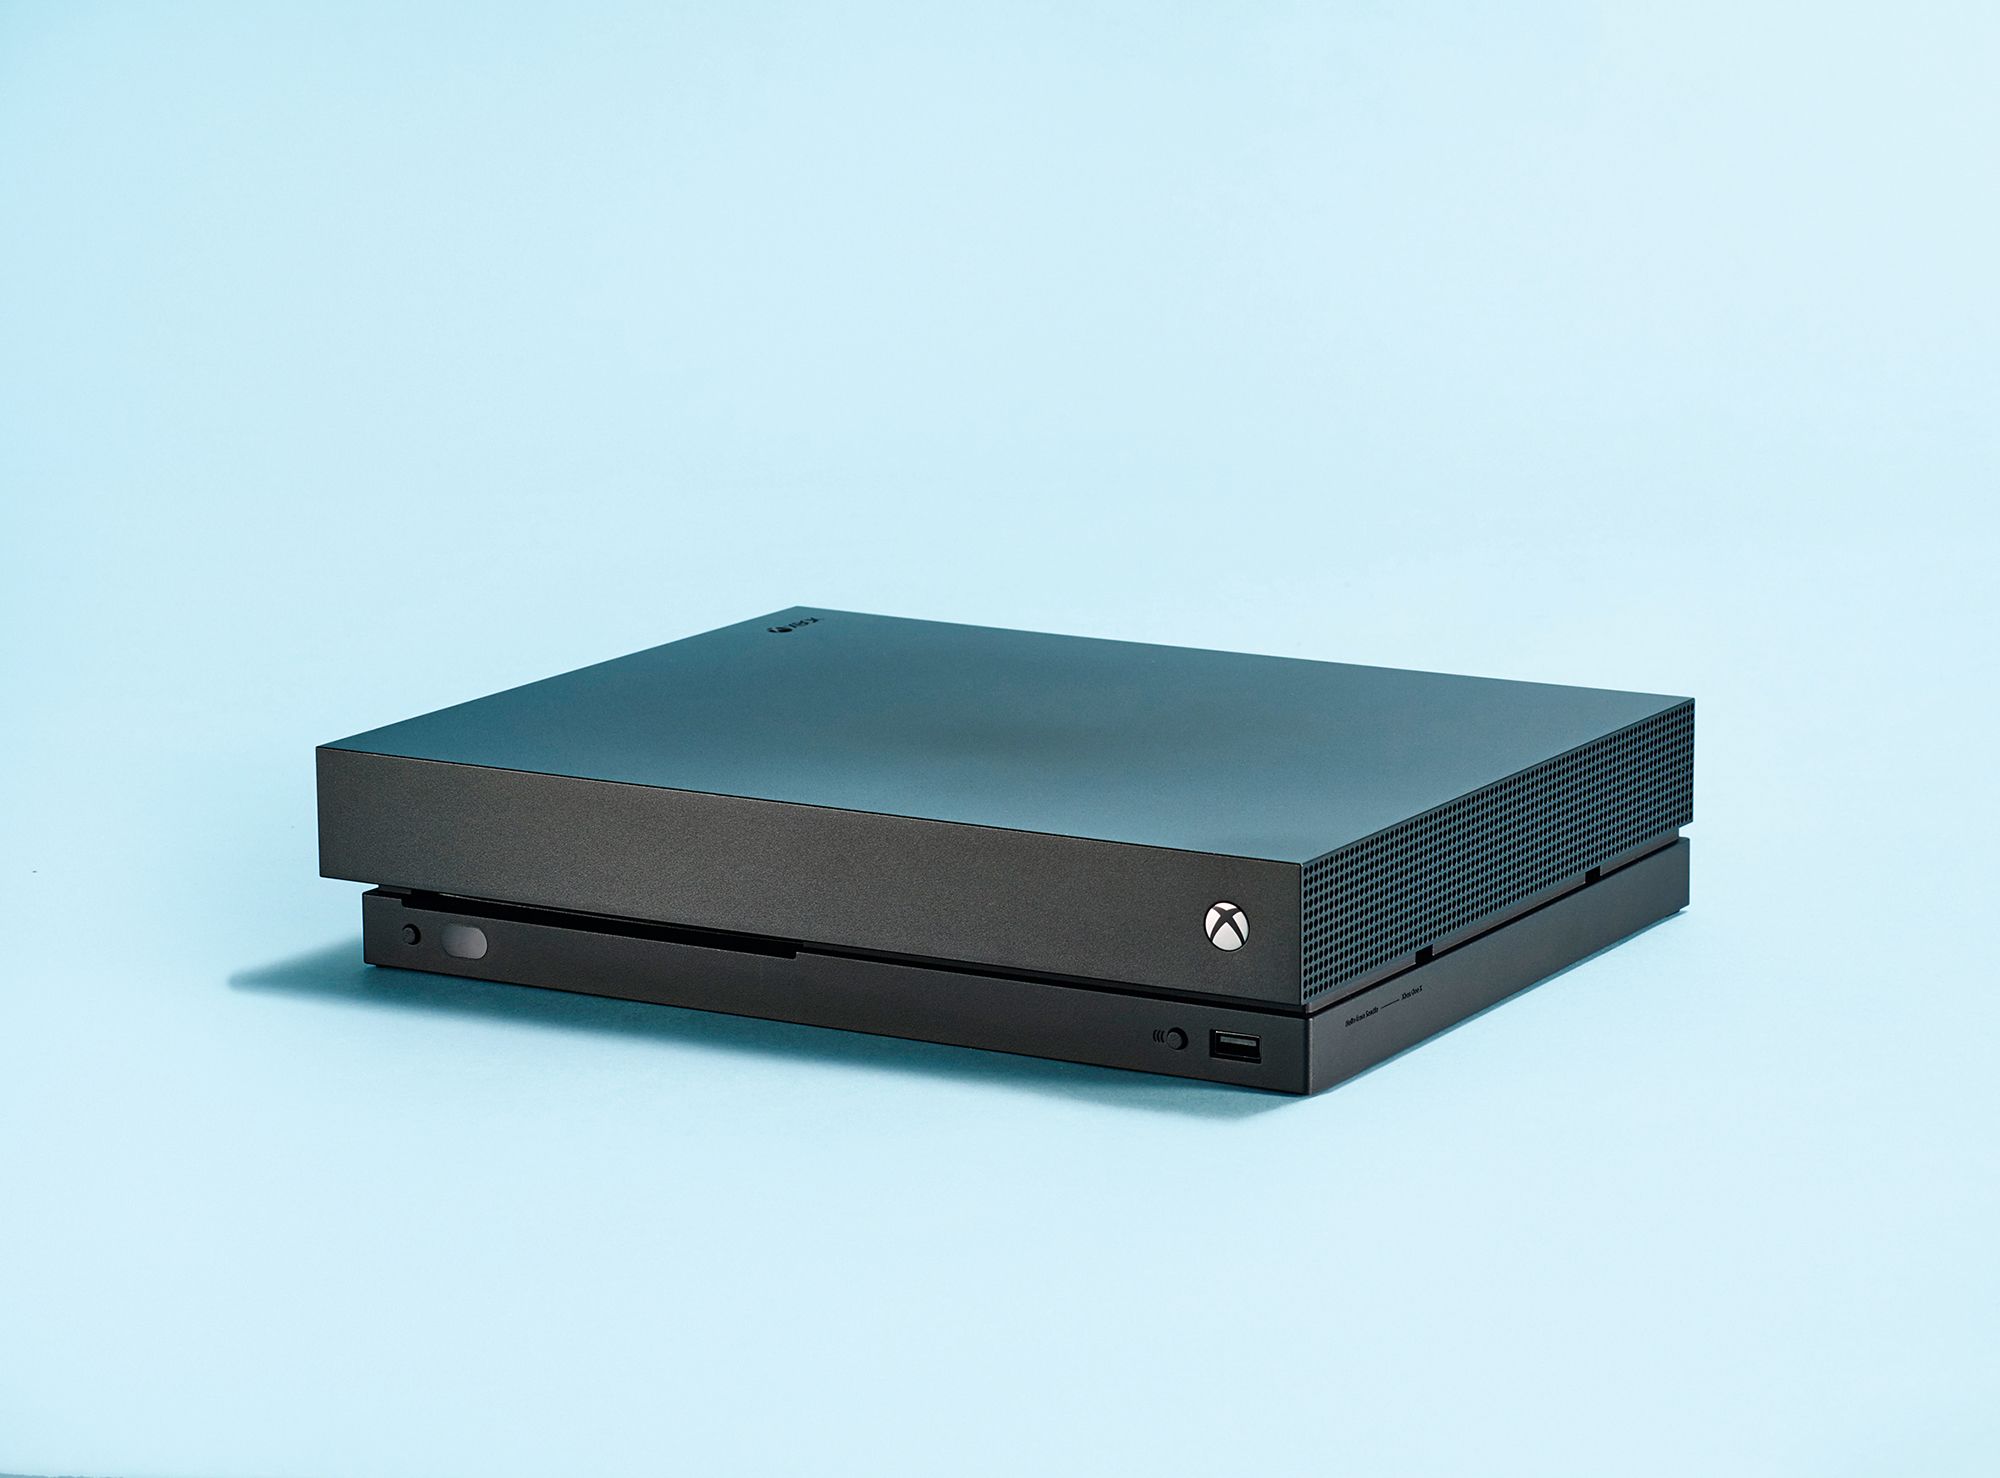 Xbox One X tech specs